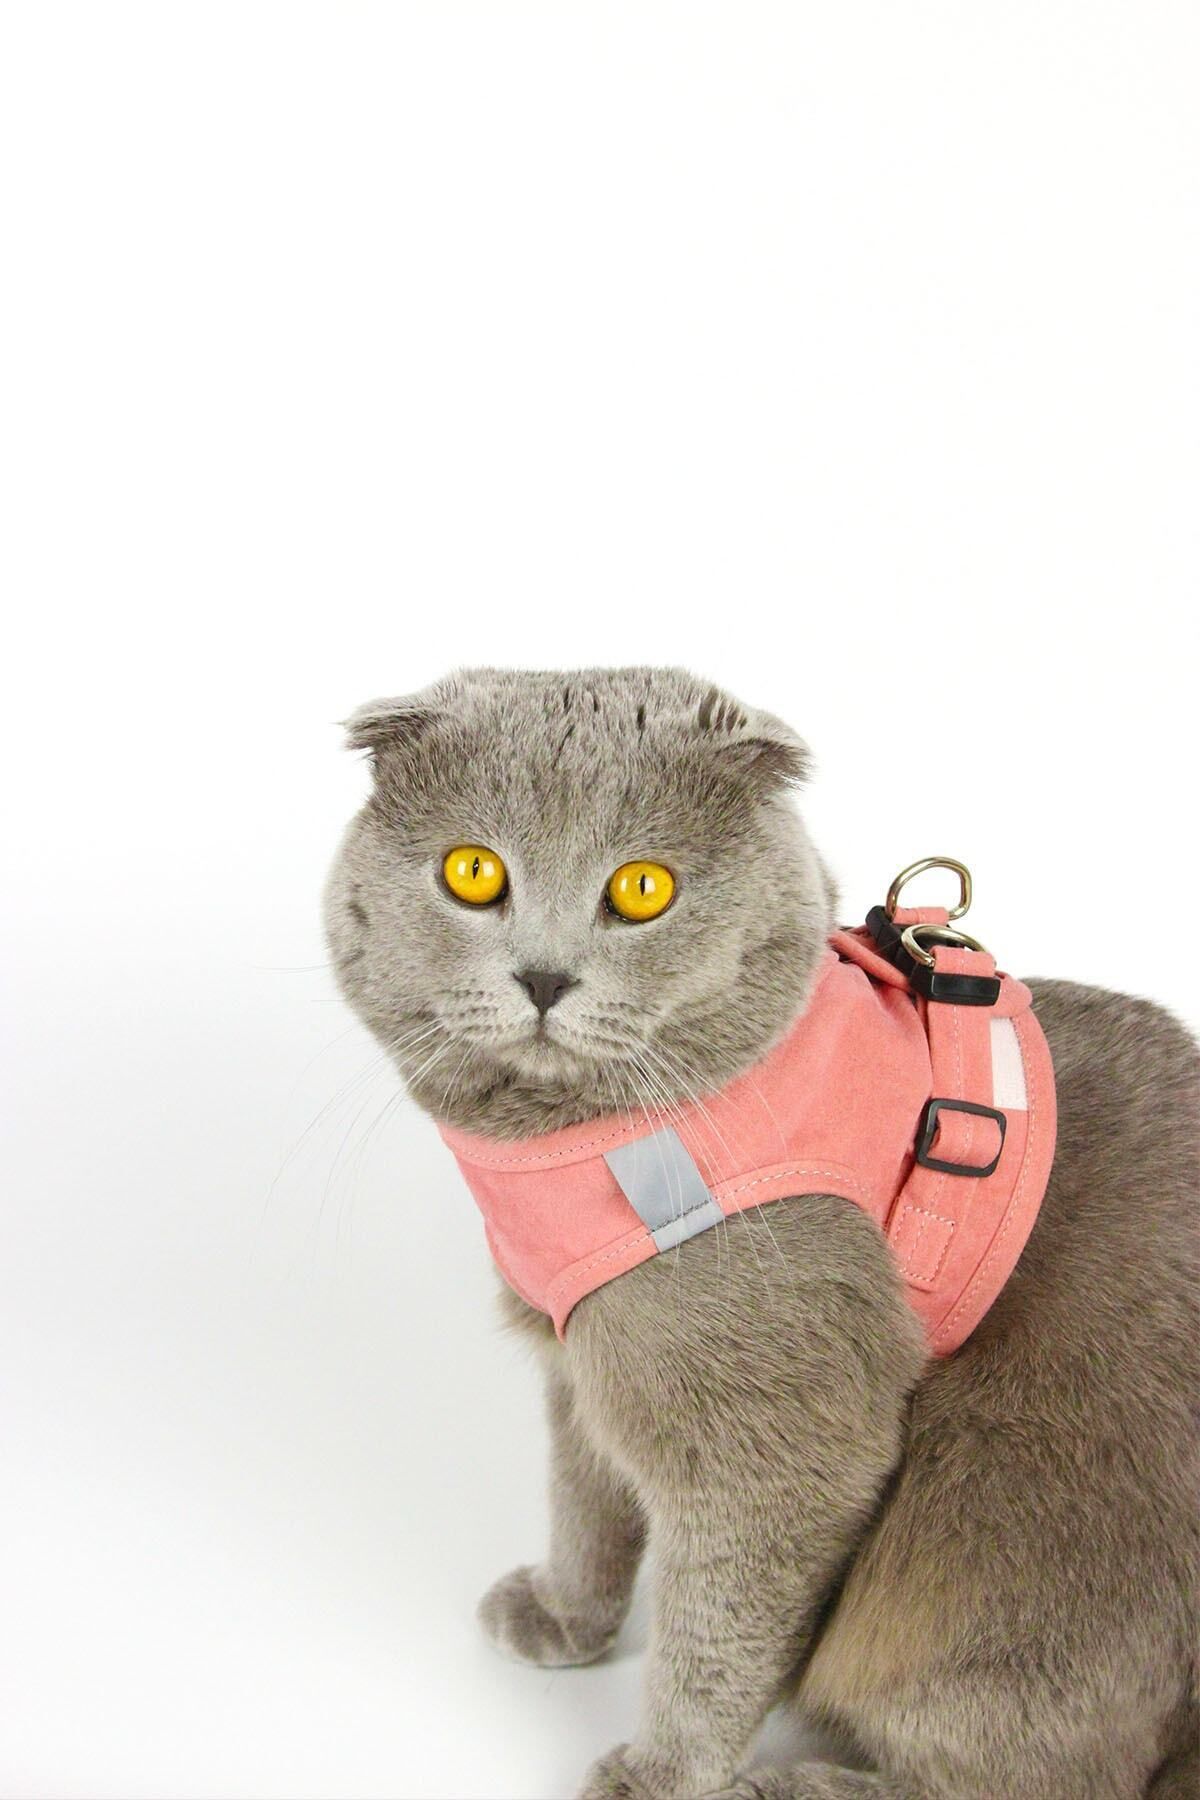 Petköy Kedi Gezdirme Tasması - Kedi Tasması Göğüs Tasma Seti Yumuşak Süet Pembe Renk